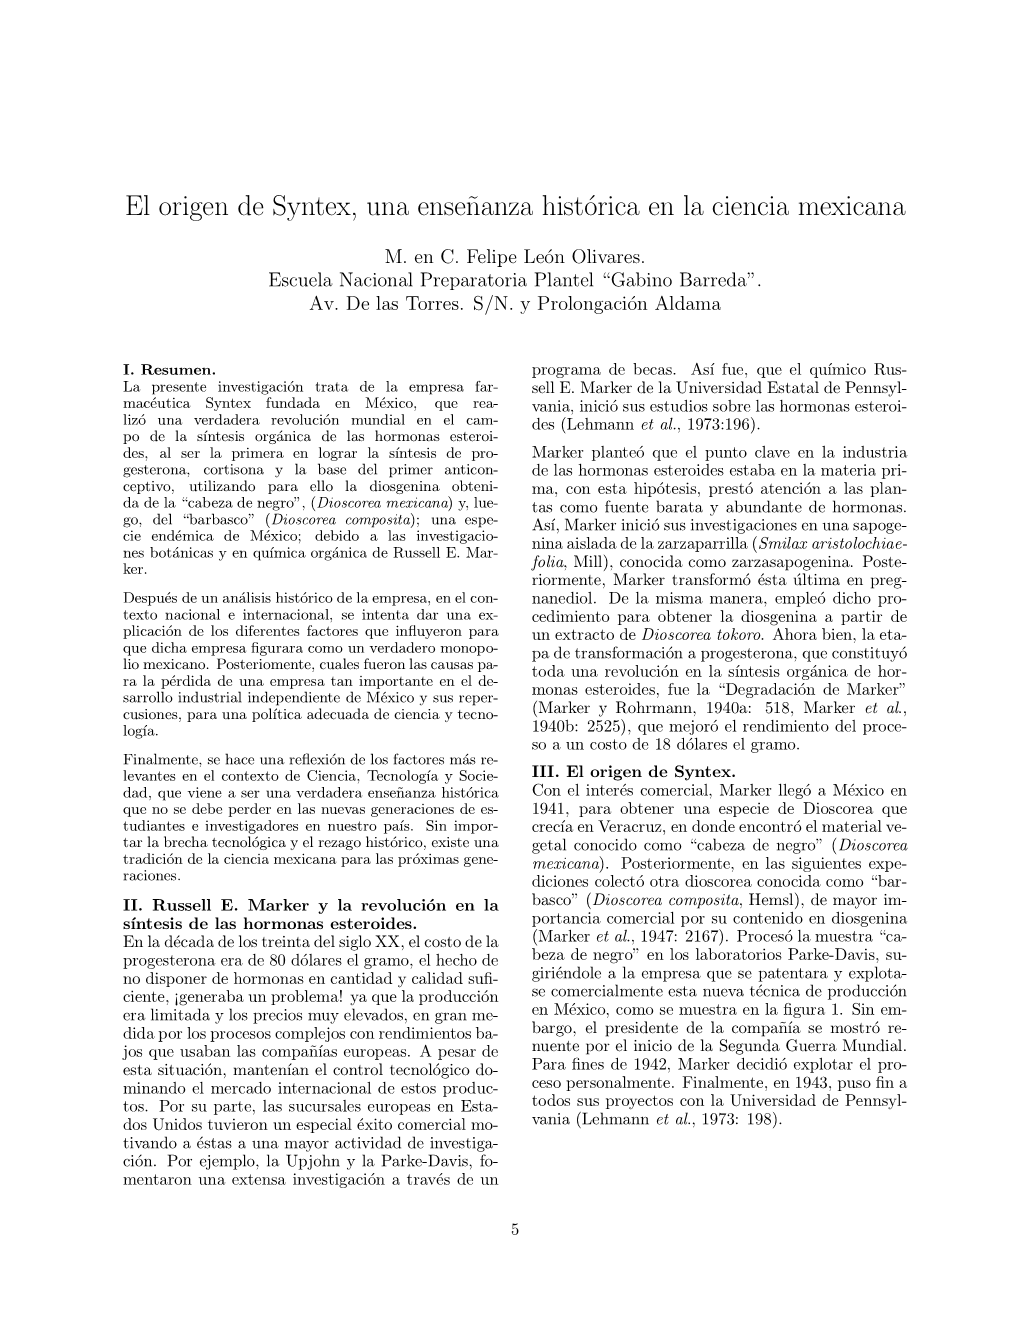 El Origen De Syntex, Una Enseñanza Hist¶Orica En La Ciencia Mexicana